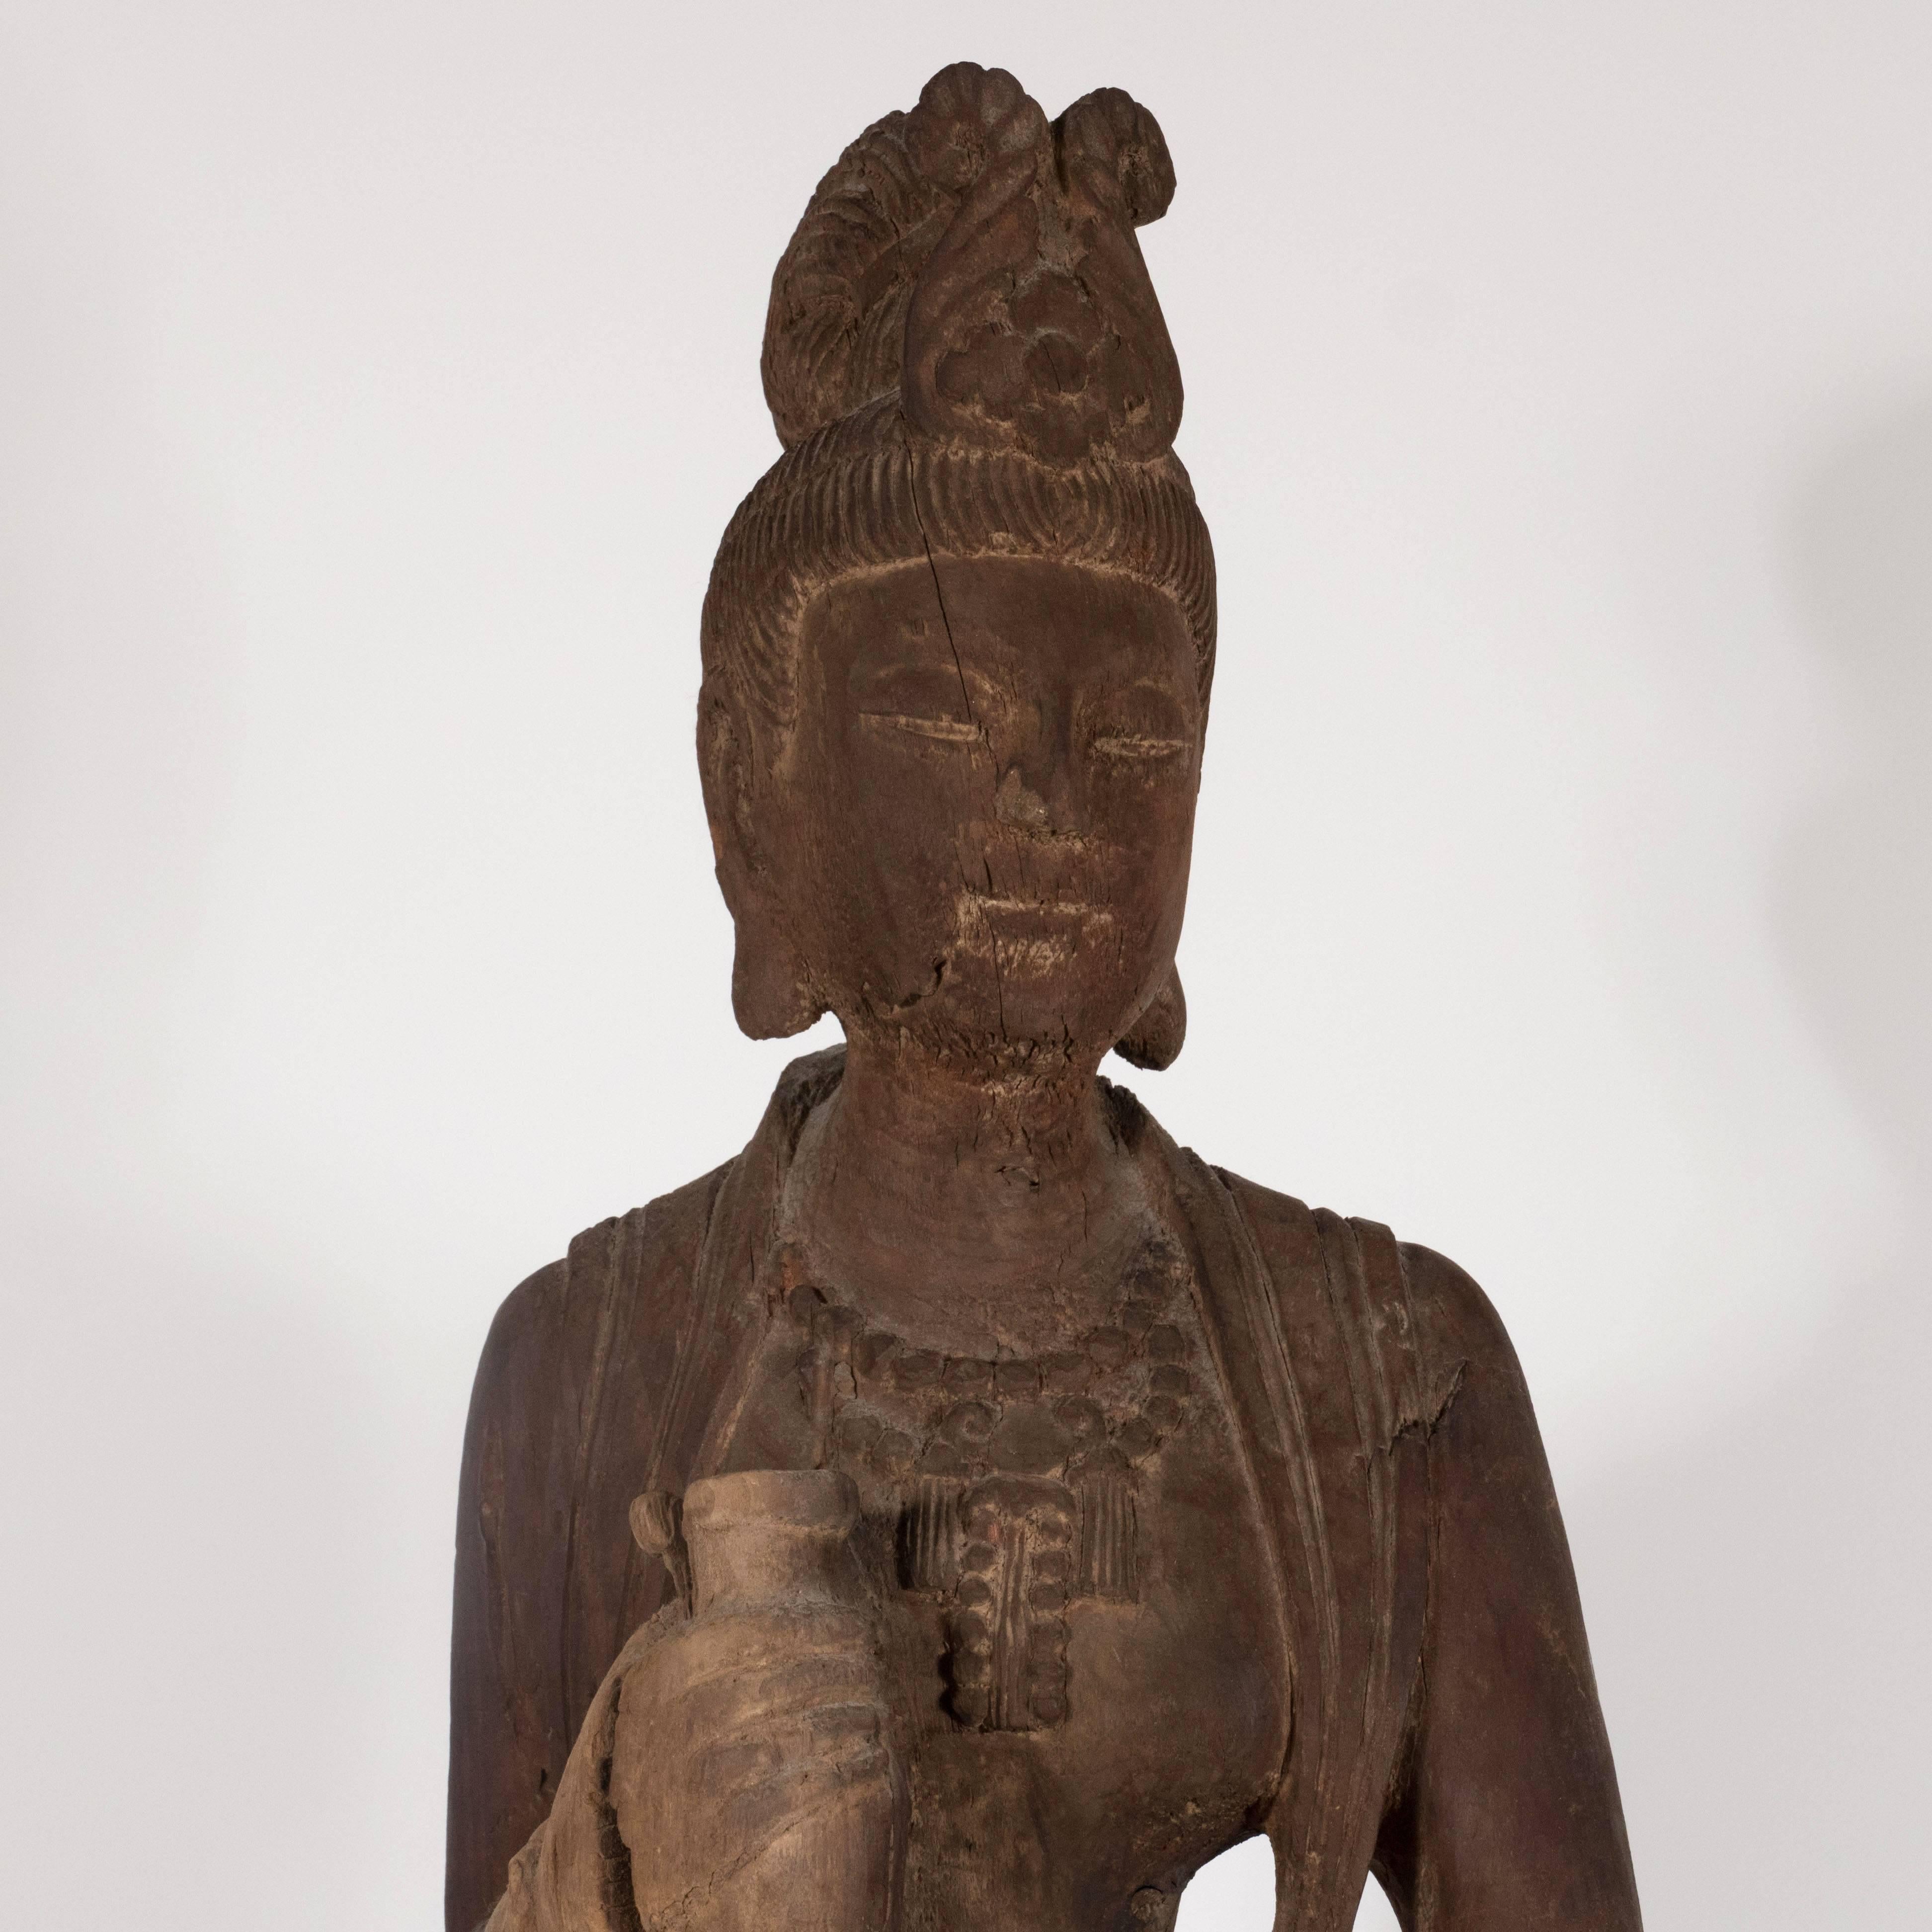 Diese wunderschöne, im 18. Jahrhundert in China entstandene Skulptur stellt Guanyin dar, einen Bodhisattva, der mit Mitgefühl assoziiert wird. Die weibliche Form hält einen Topf in ihren Händen. Sie erscheint in einem langen, fließenden Kleid mit